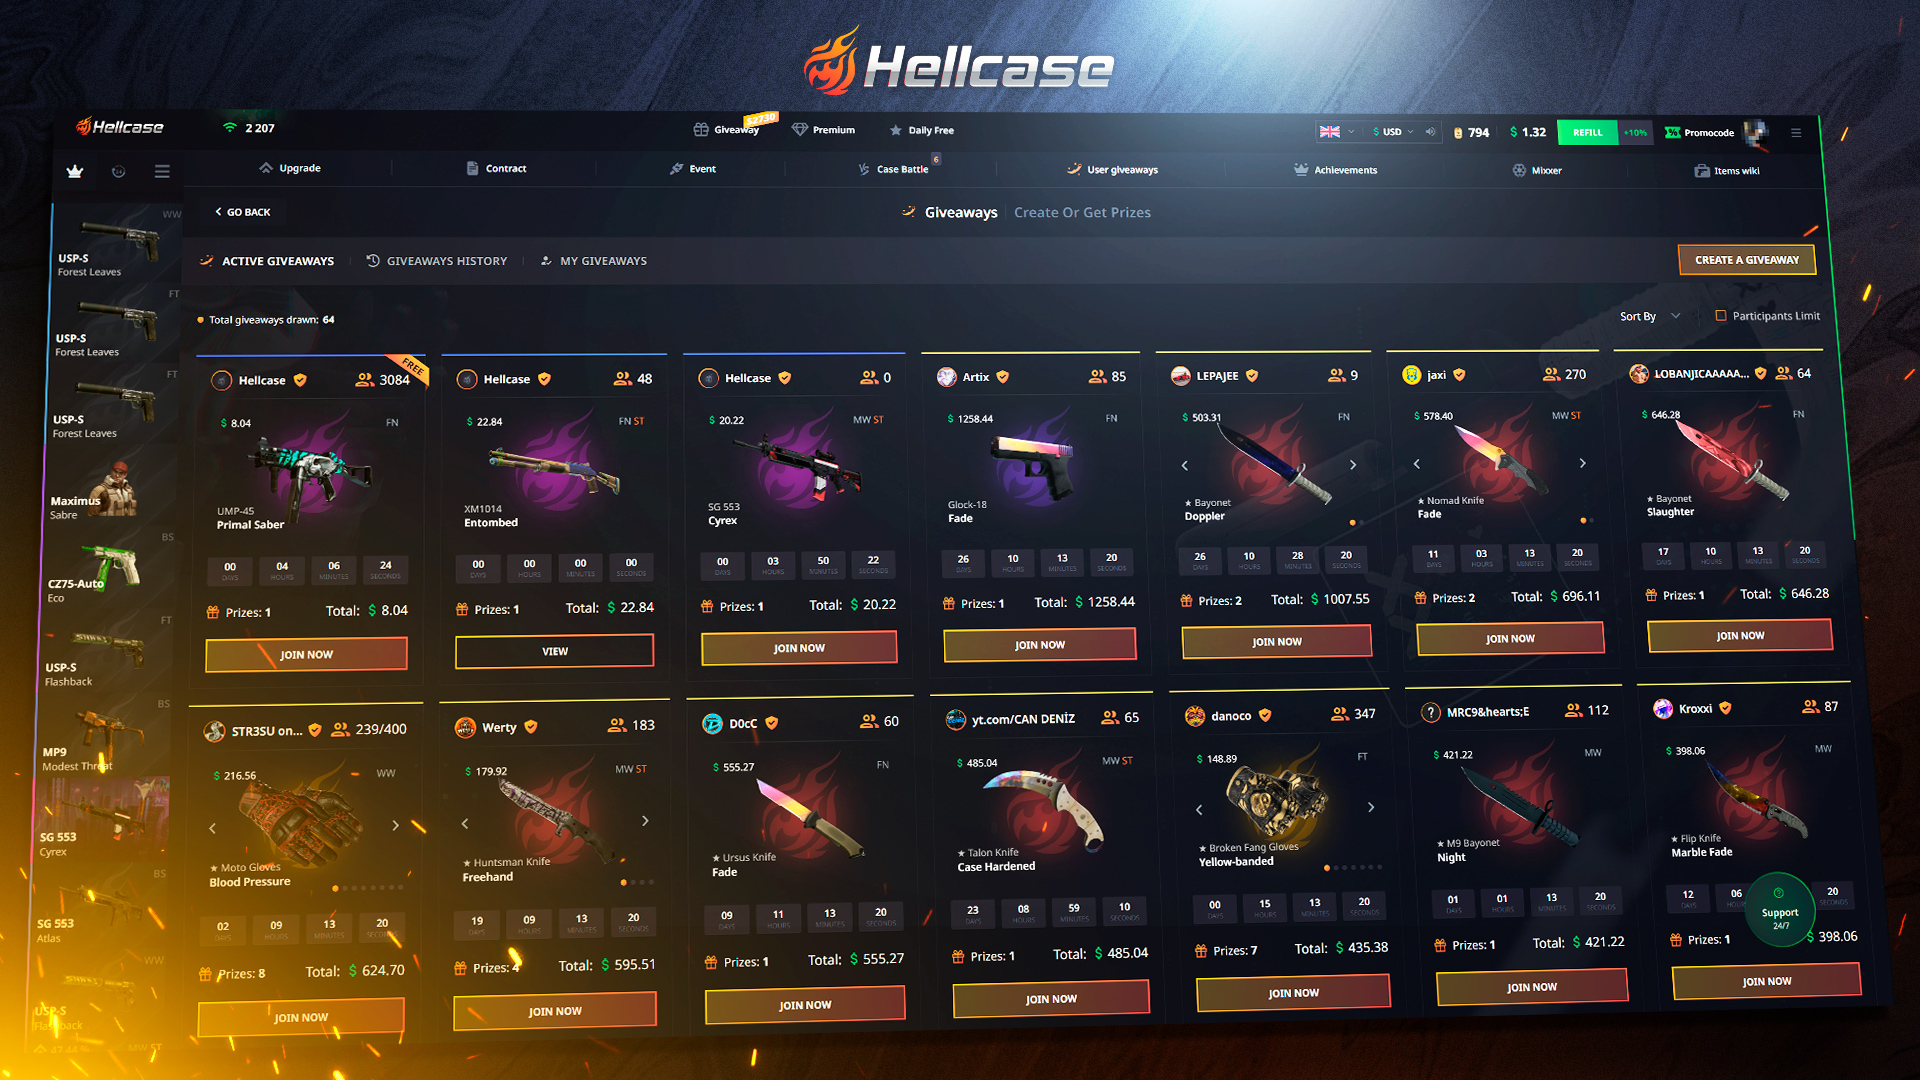 Hellcase.com 2 USD Wallet Card Code